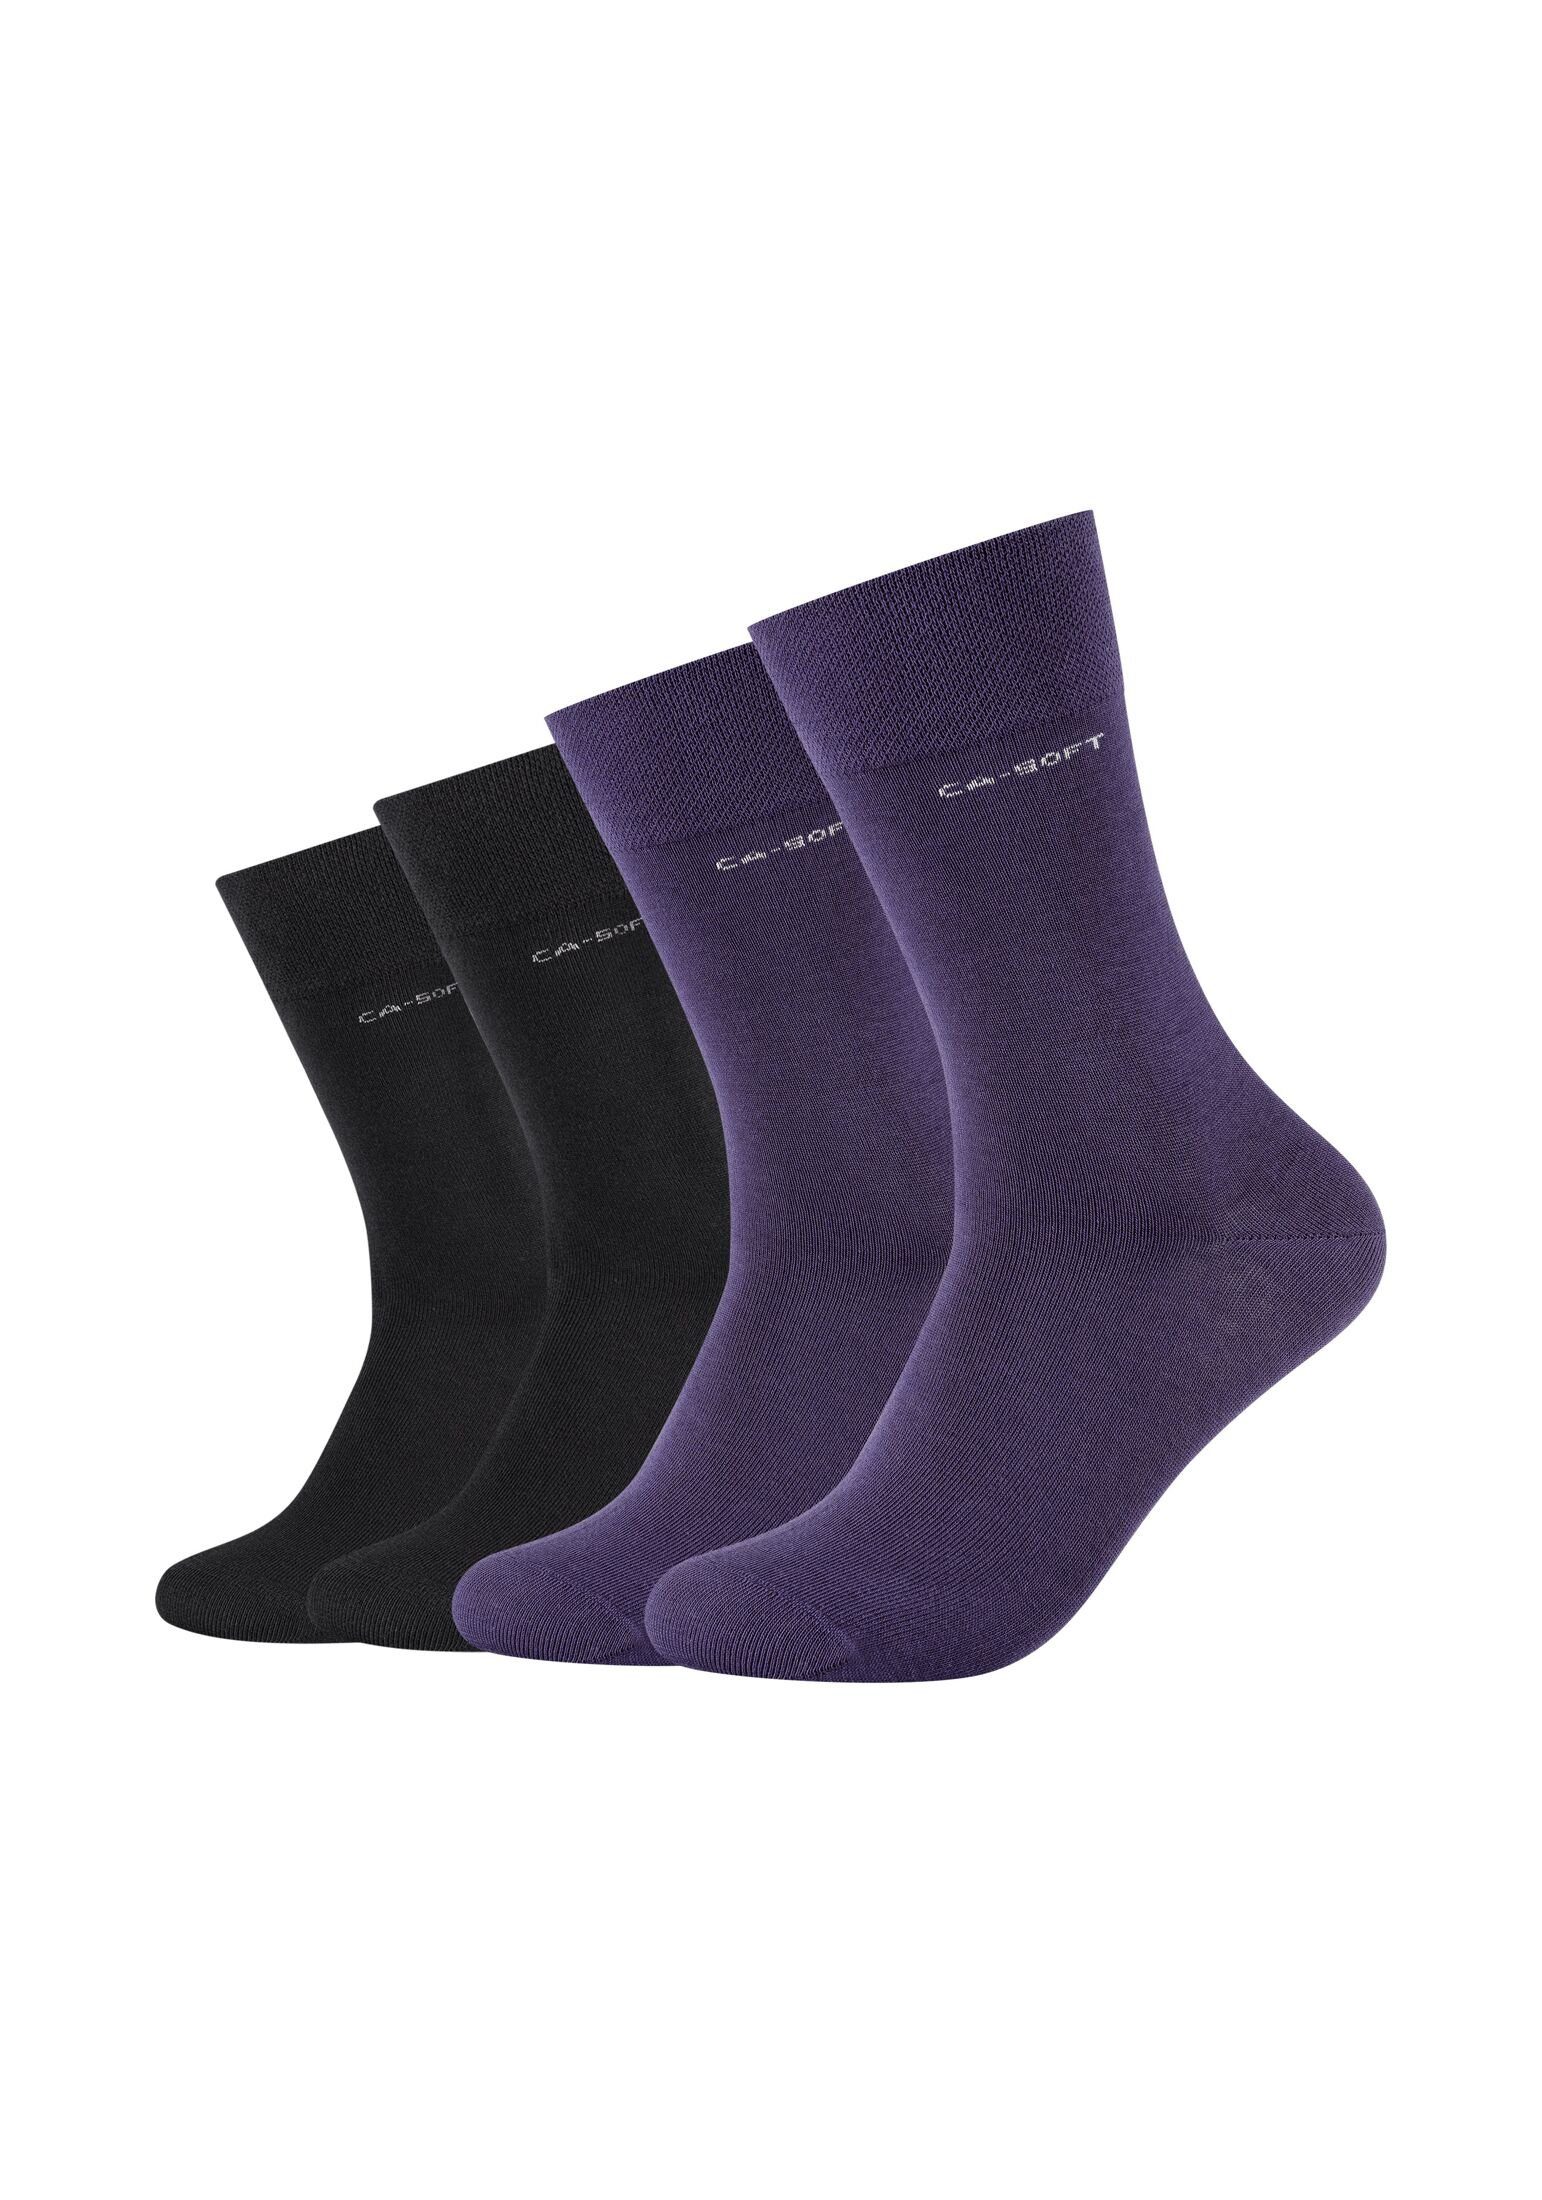 Herren für Bequem mulberry Businesssocken Komfortbund Camano Socken Socken Damen purple und